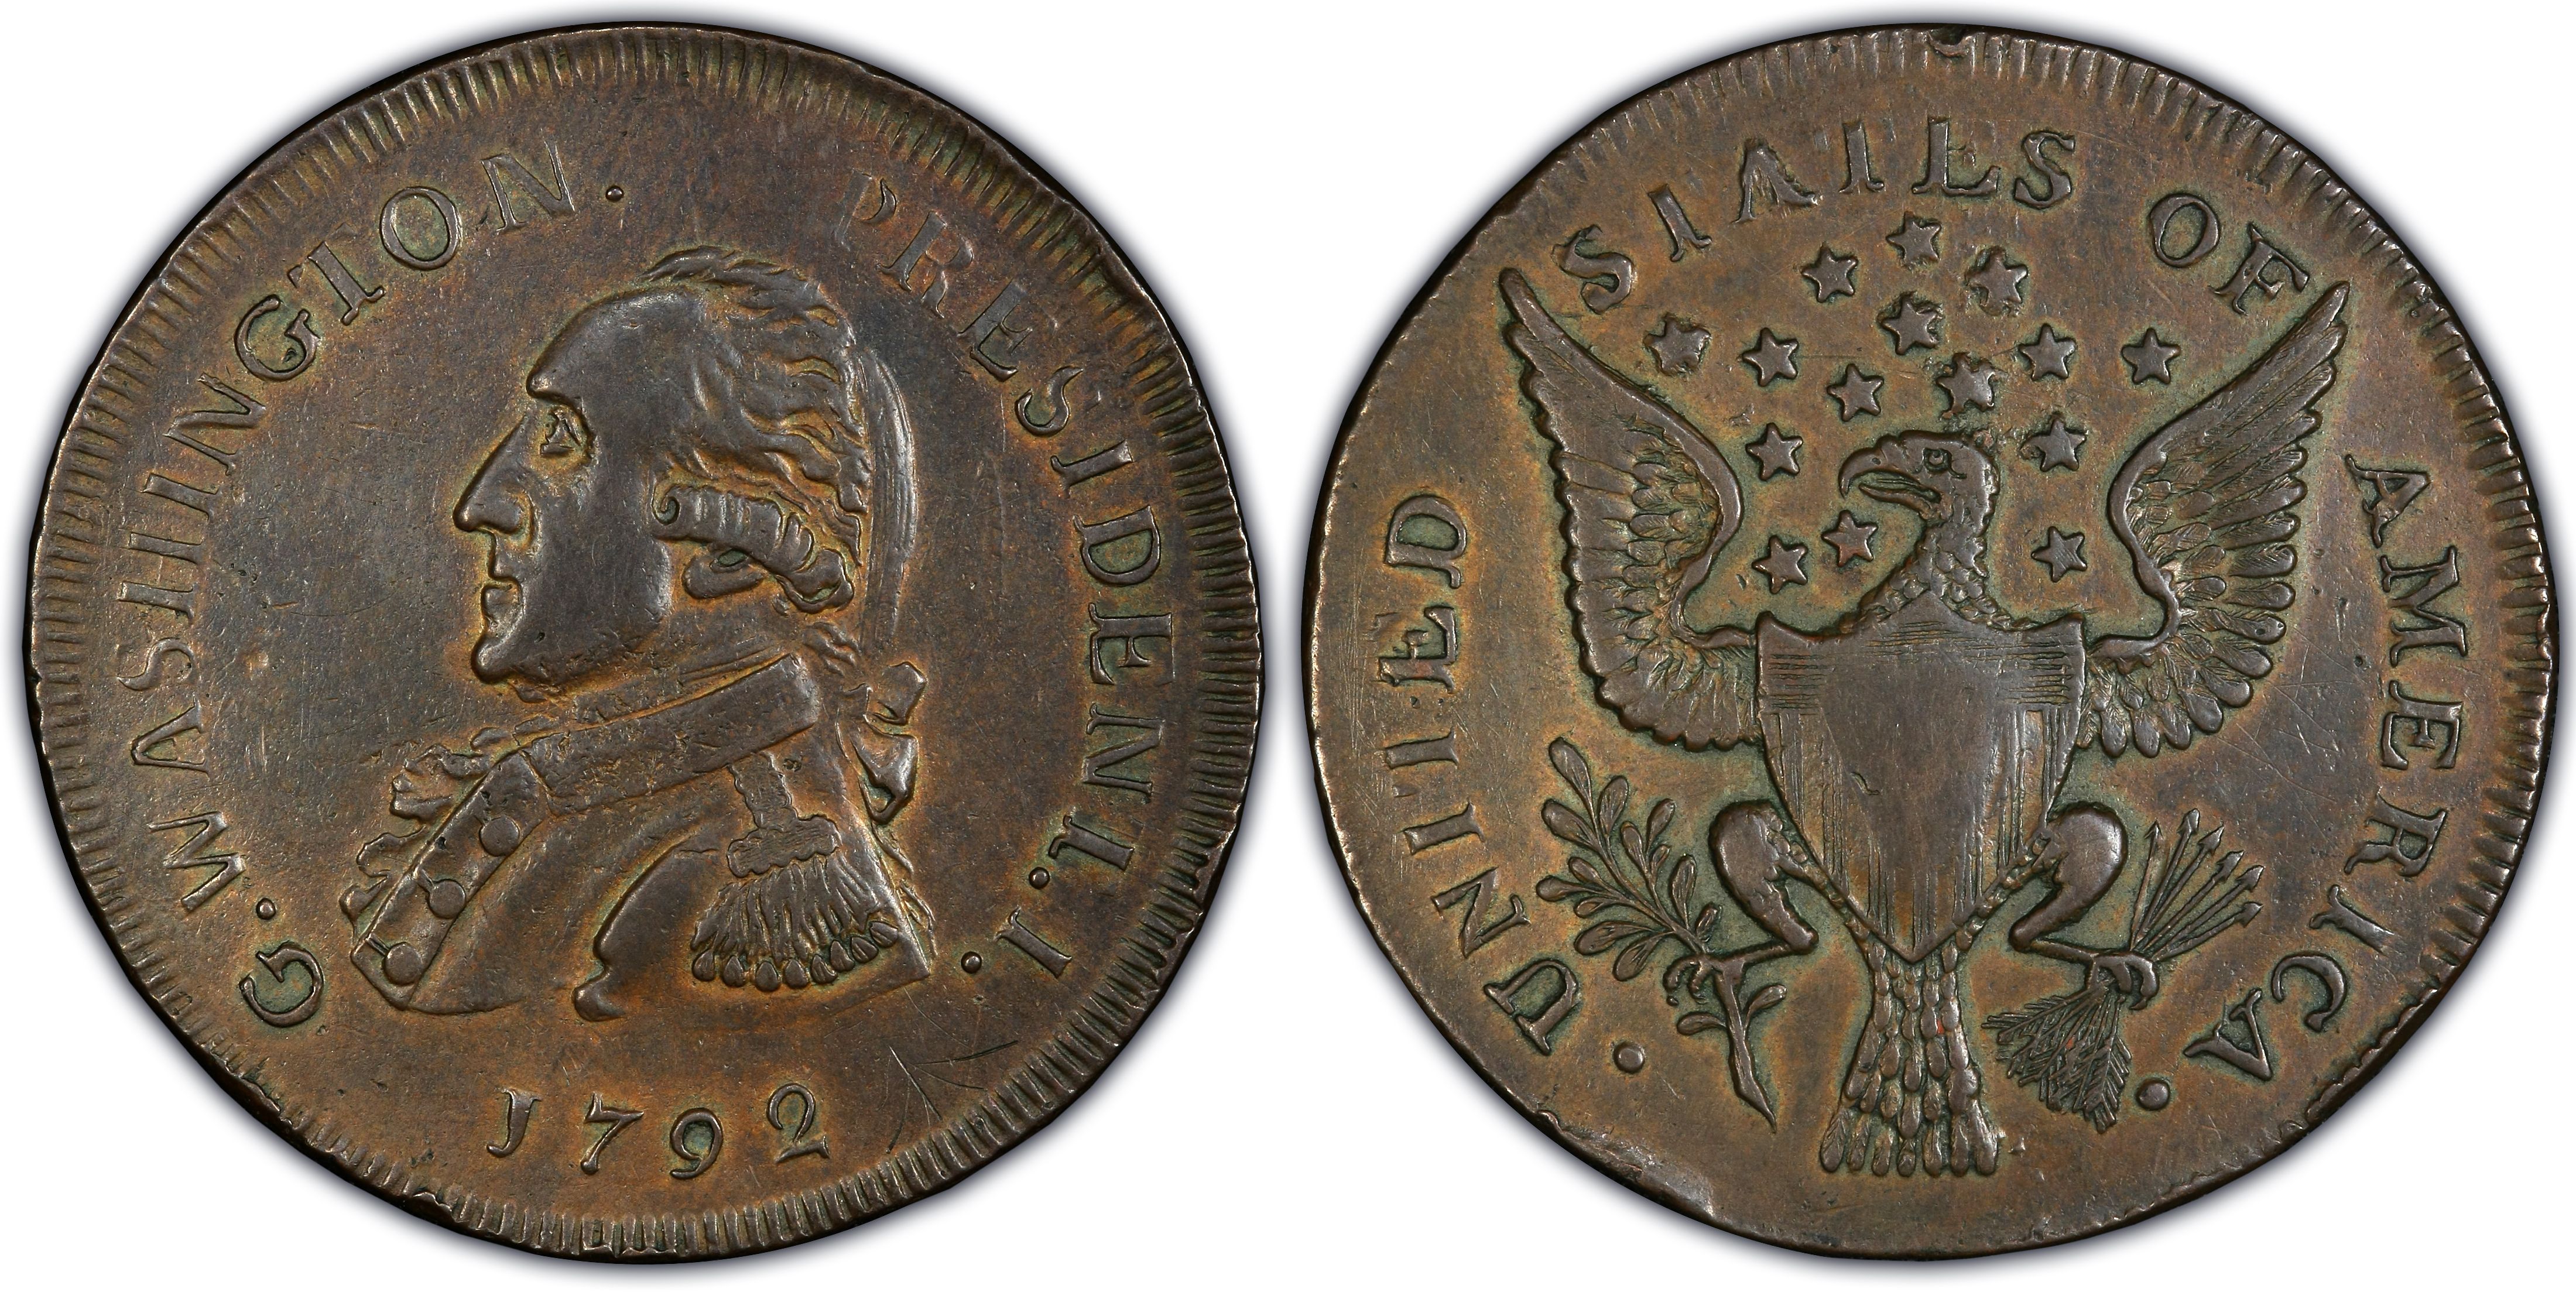 orn coin